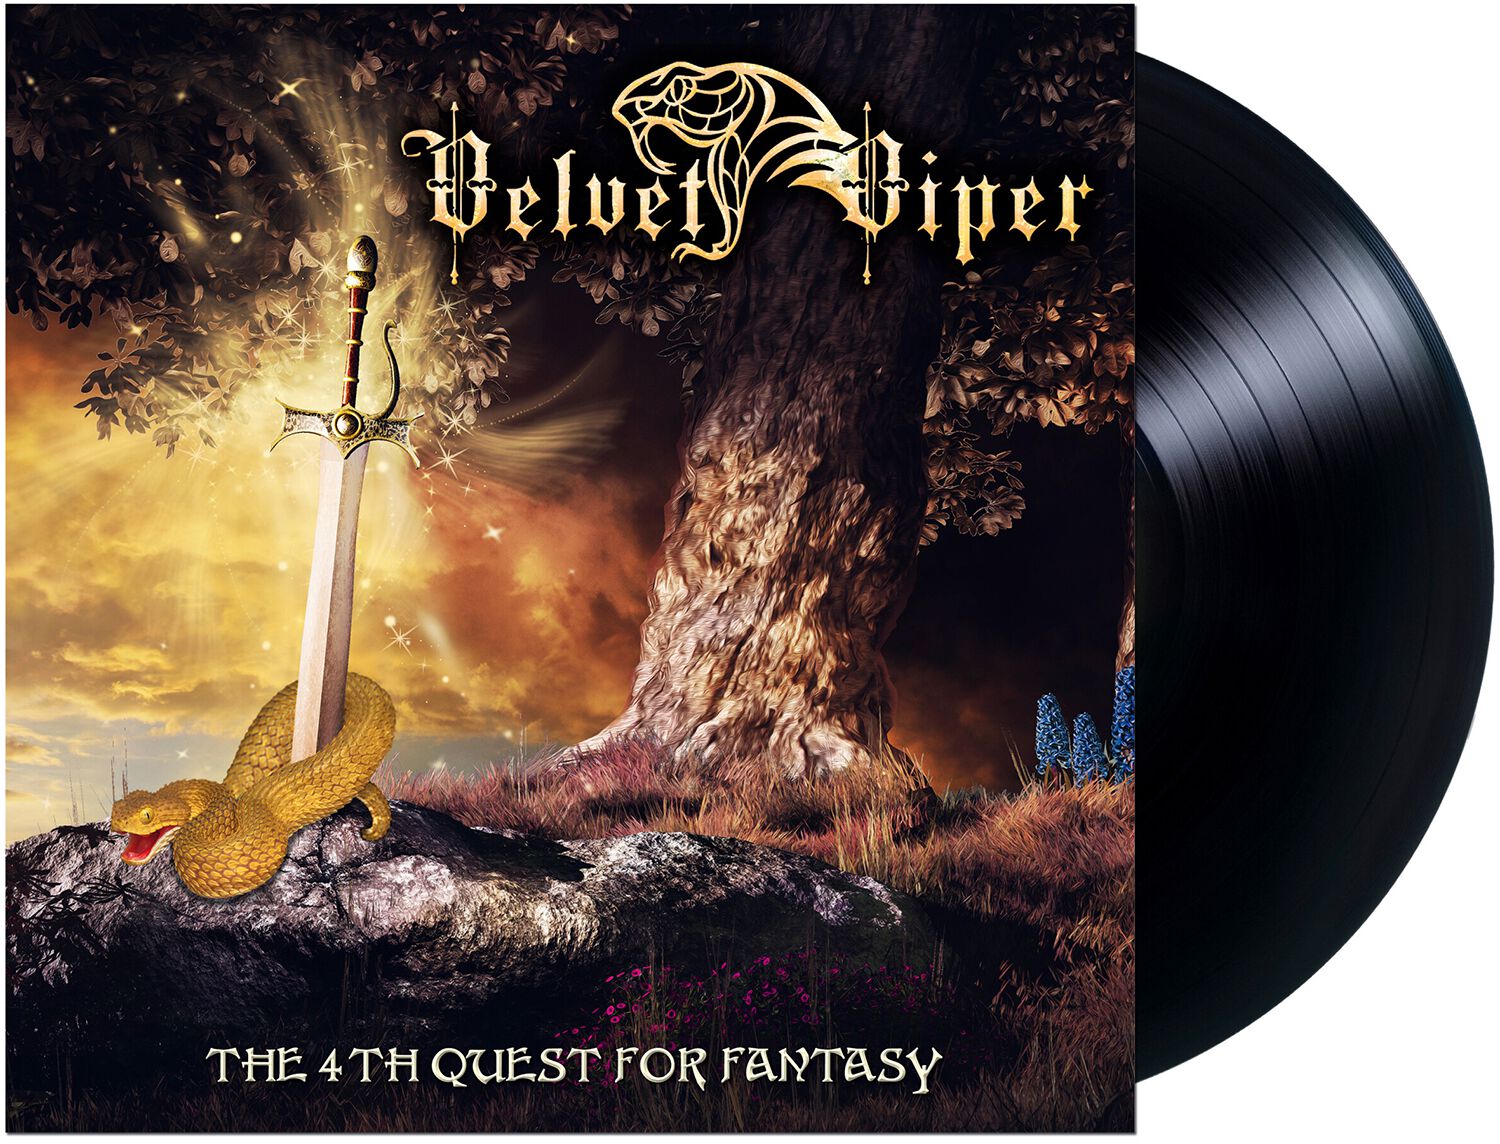 Velvet Viper The 4th quest for fantasy LP schwarz